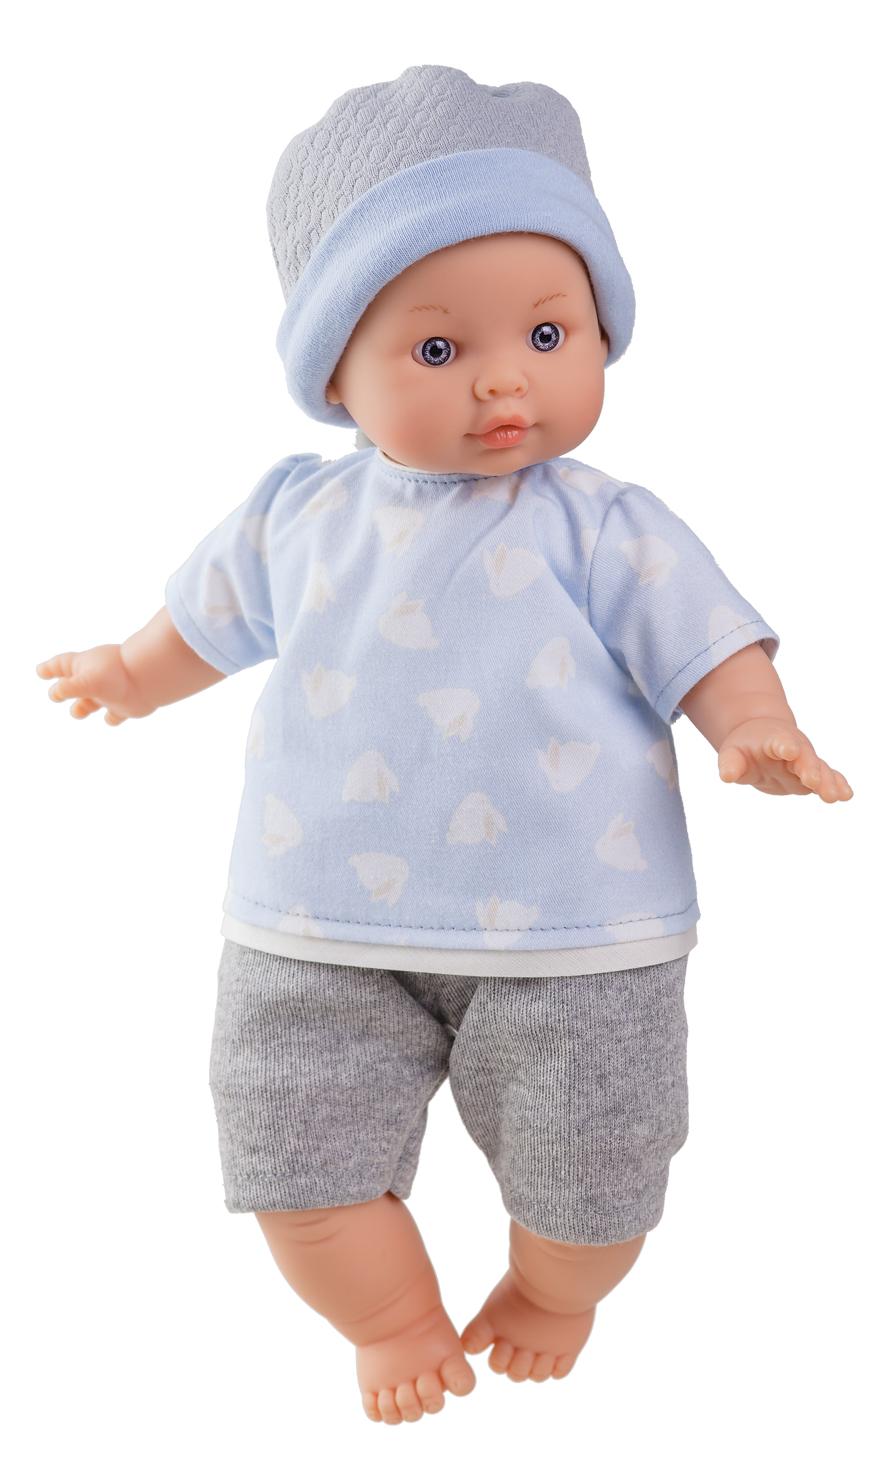 Realistické miminko - chlapeček Aaron od firmy Paola Reina